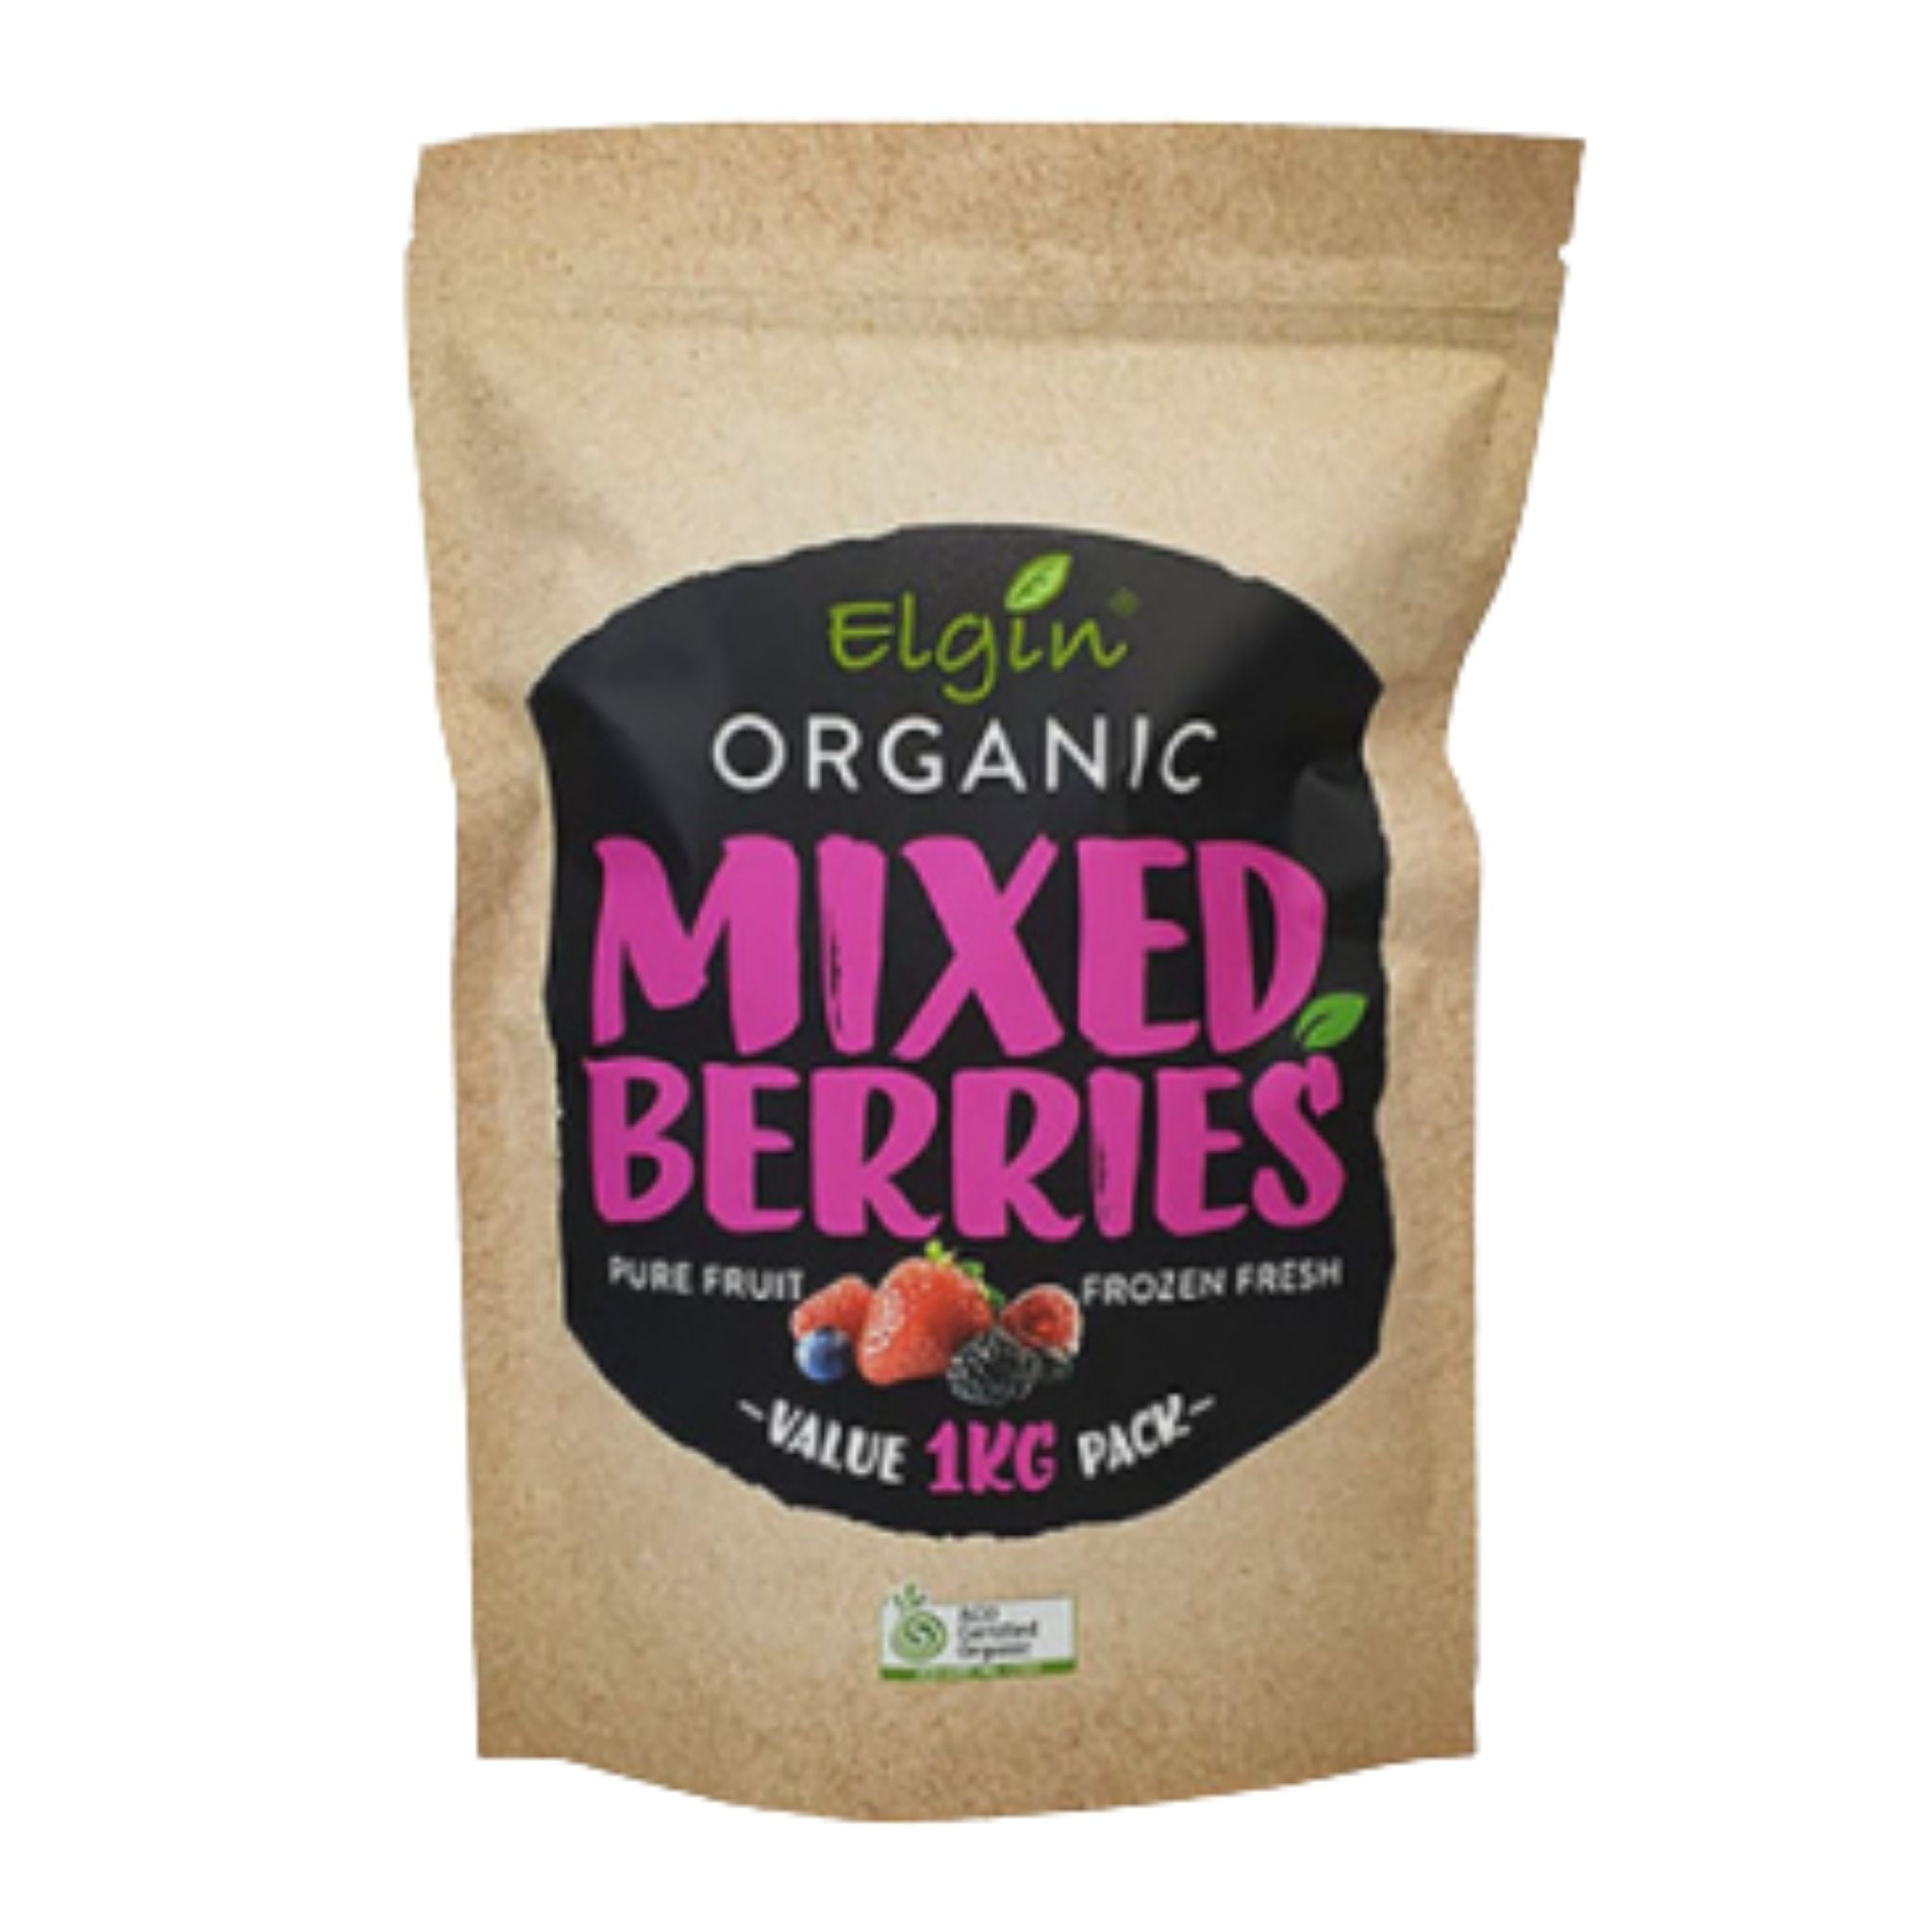 Frozen Mixed Berries - Elgin Organic. 1kg